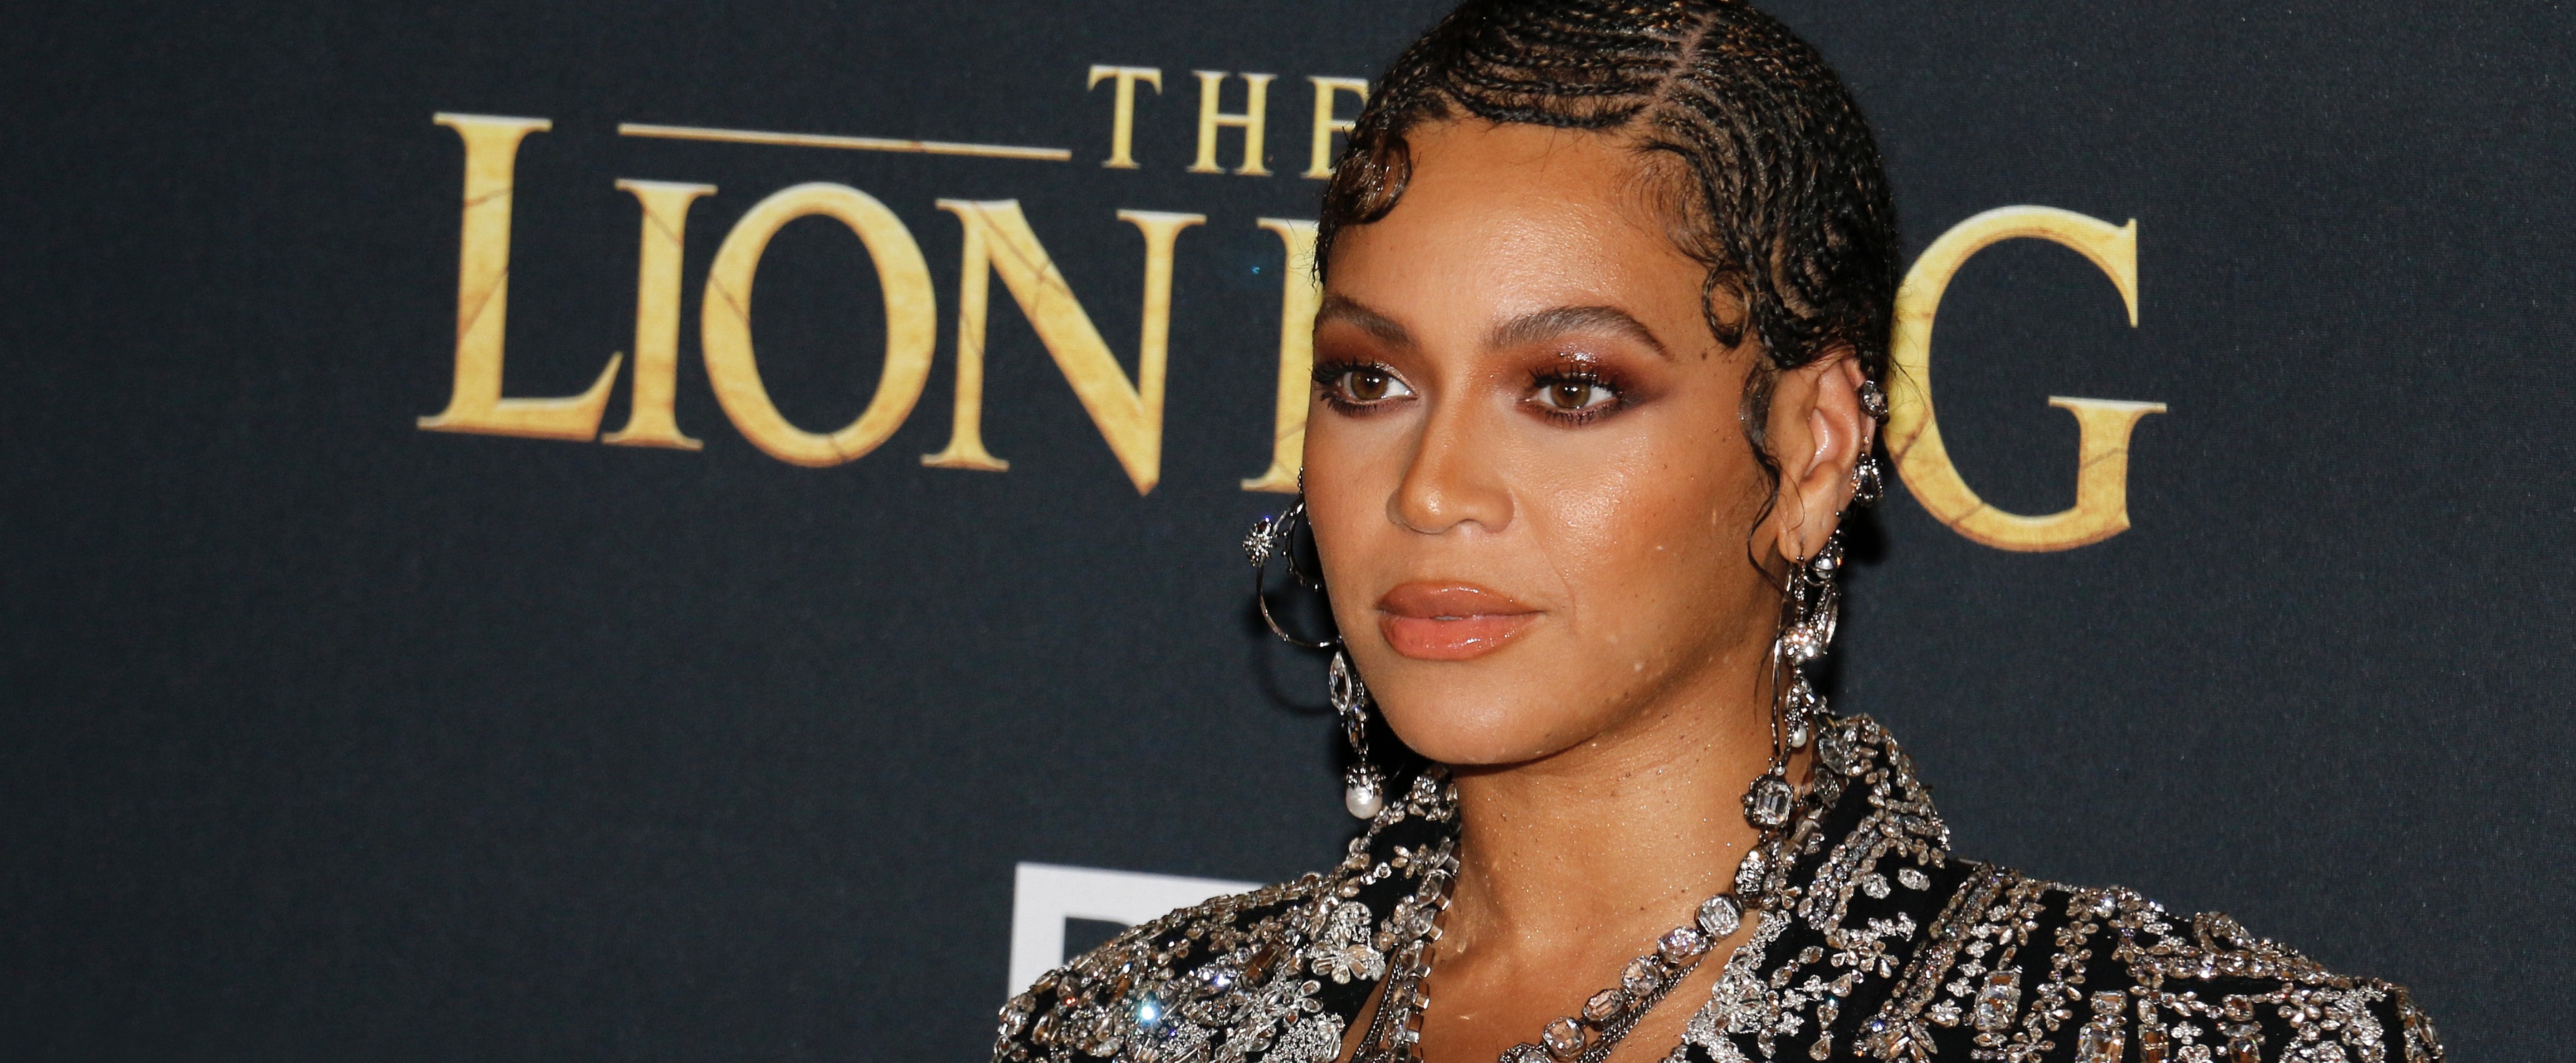 Het wachten is voorbij: zevende album Beyoncé is nu te beluisteren